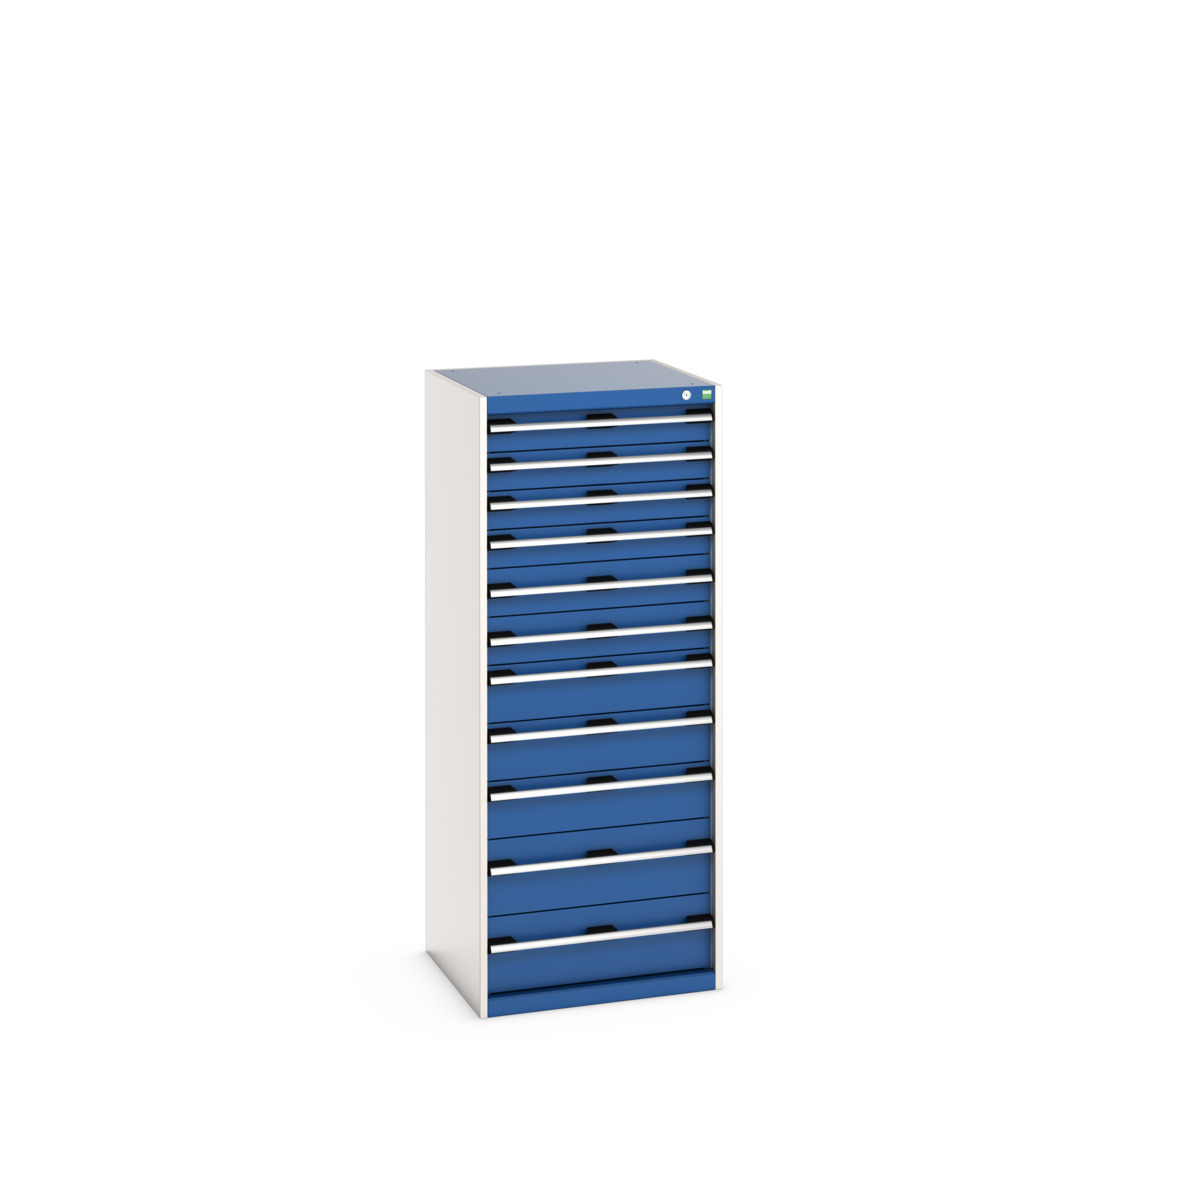 40019156.11V - cubio drawer cabinet